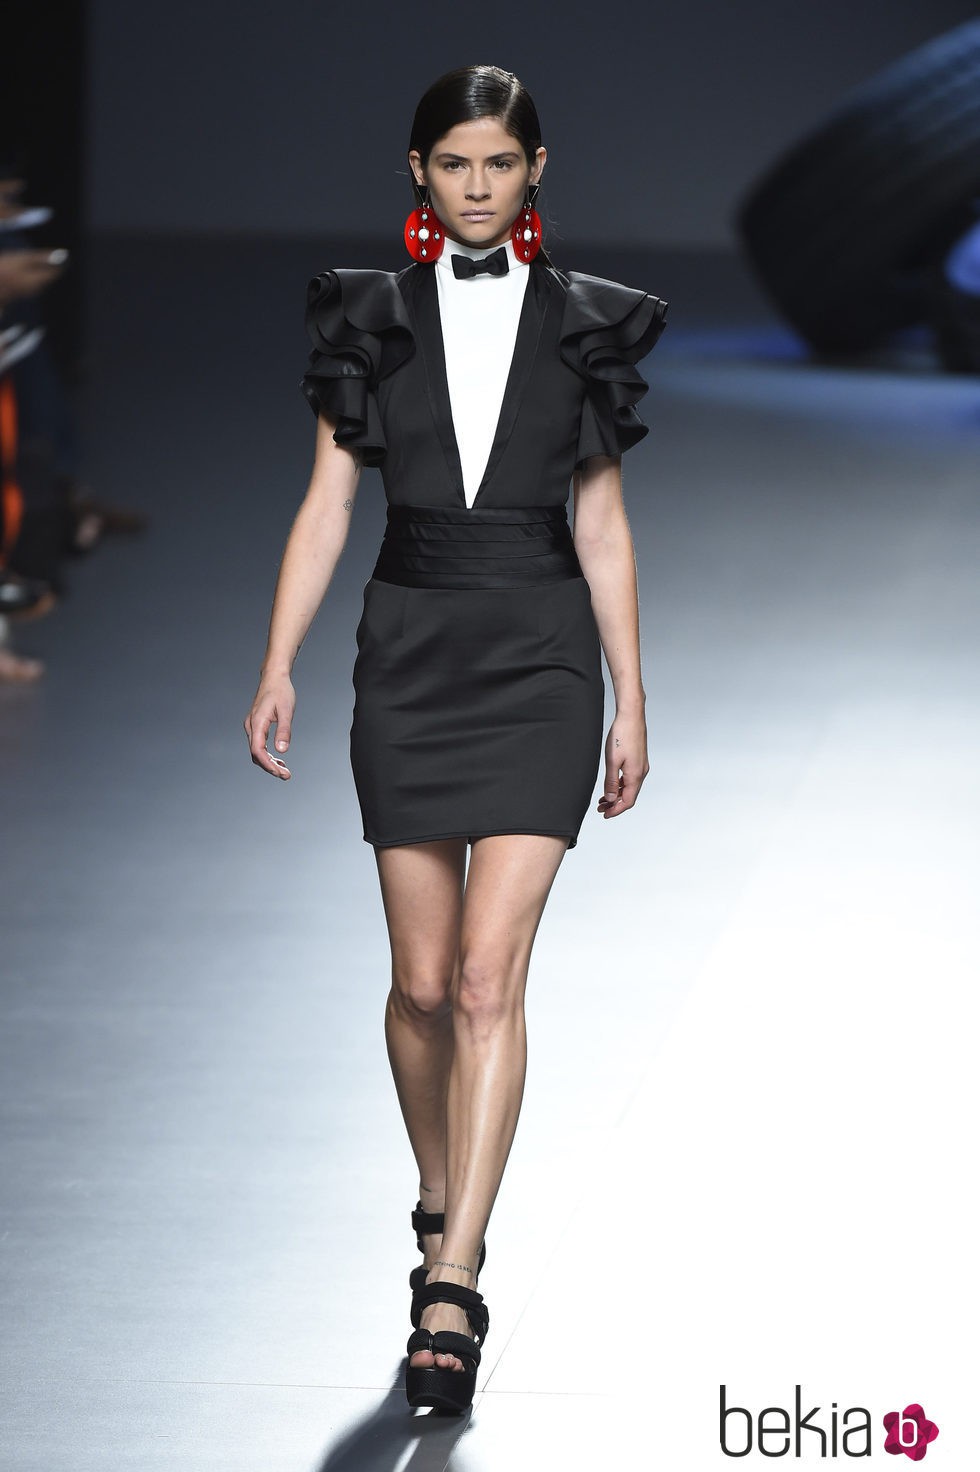 Vestido negro con volantes de la colección de primavera/verano 2016 de David Delfin en Madrid Fashion Week